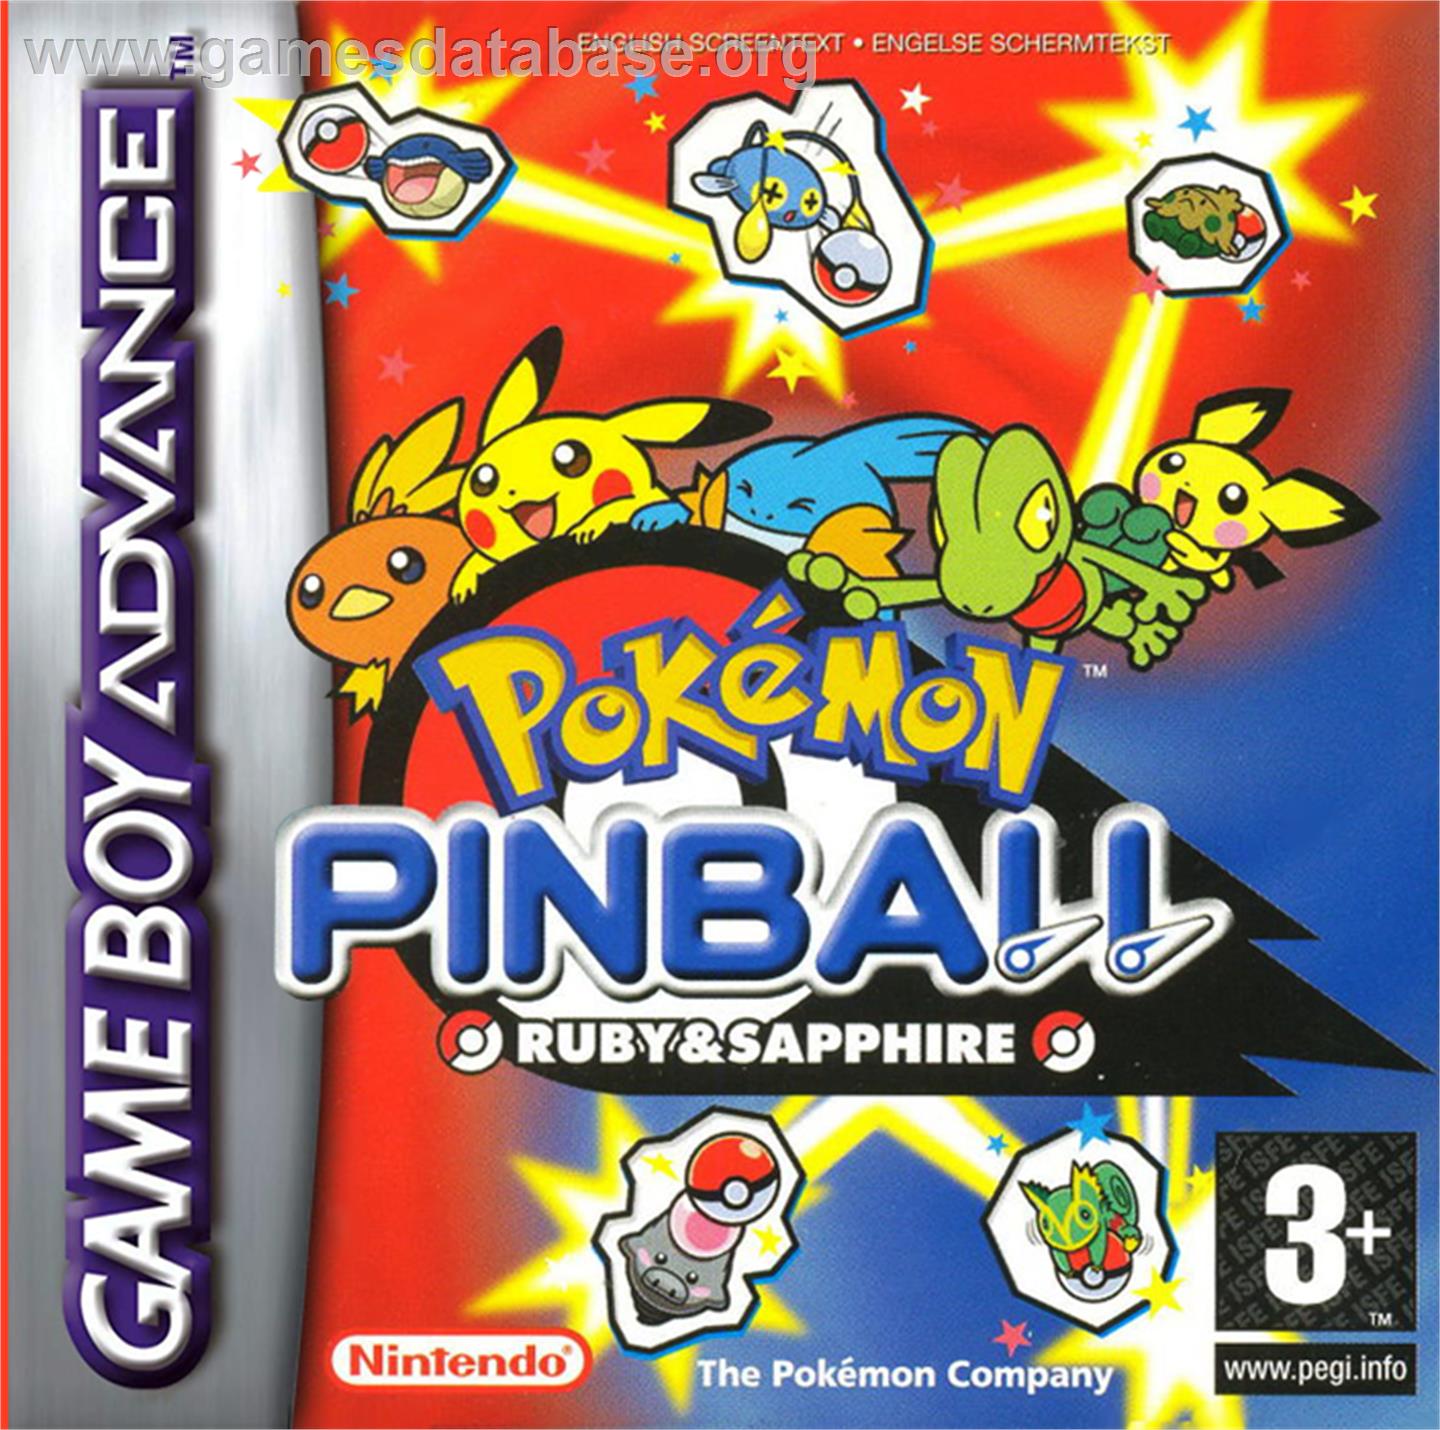 Pokemon Pinball: Ruby & Sapphire - Nintendo Game Boy Advance - Artwork - Box